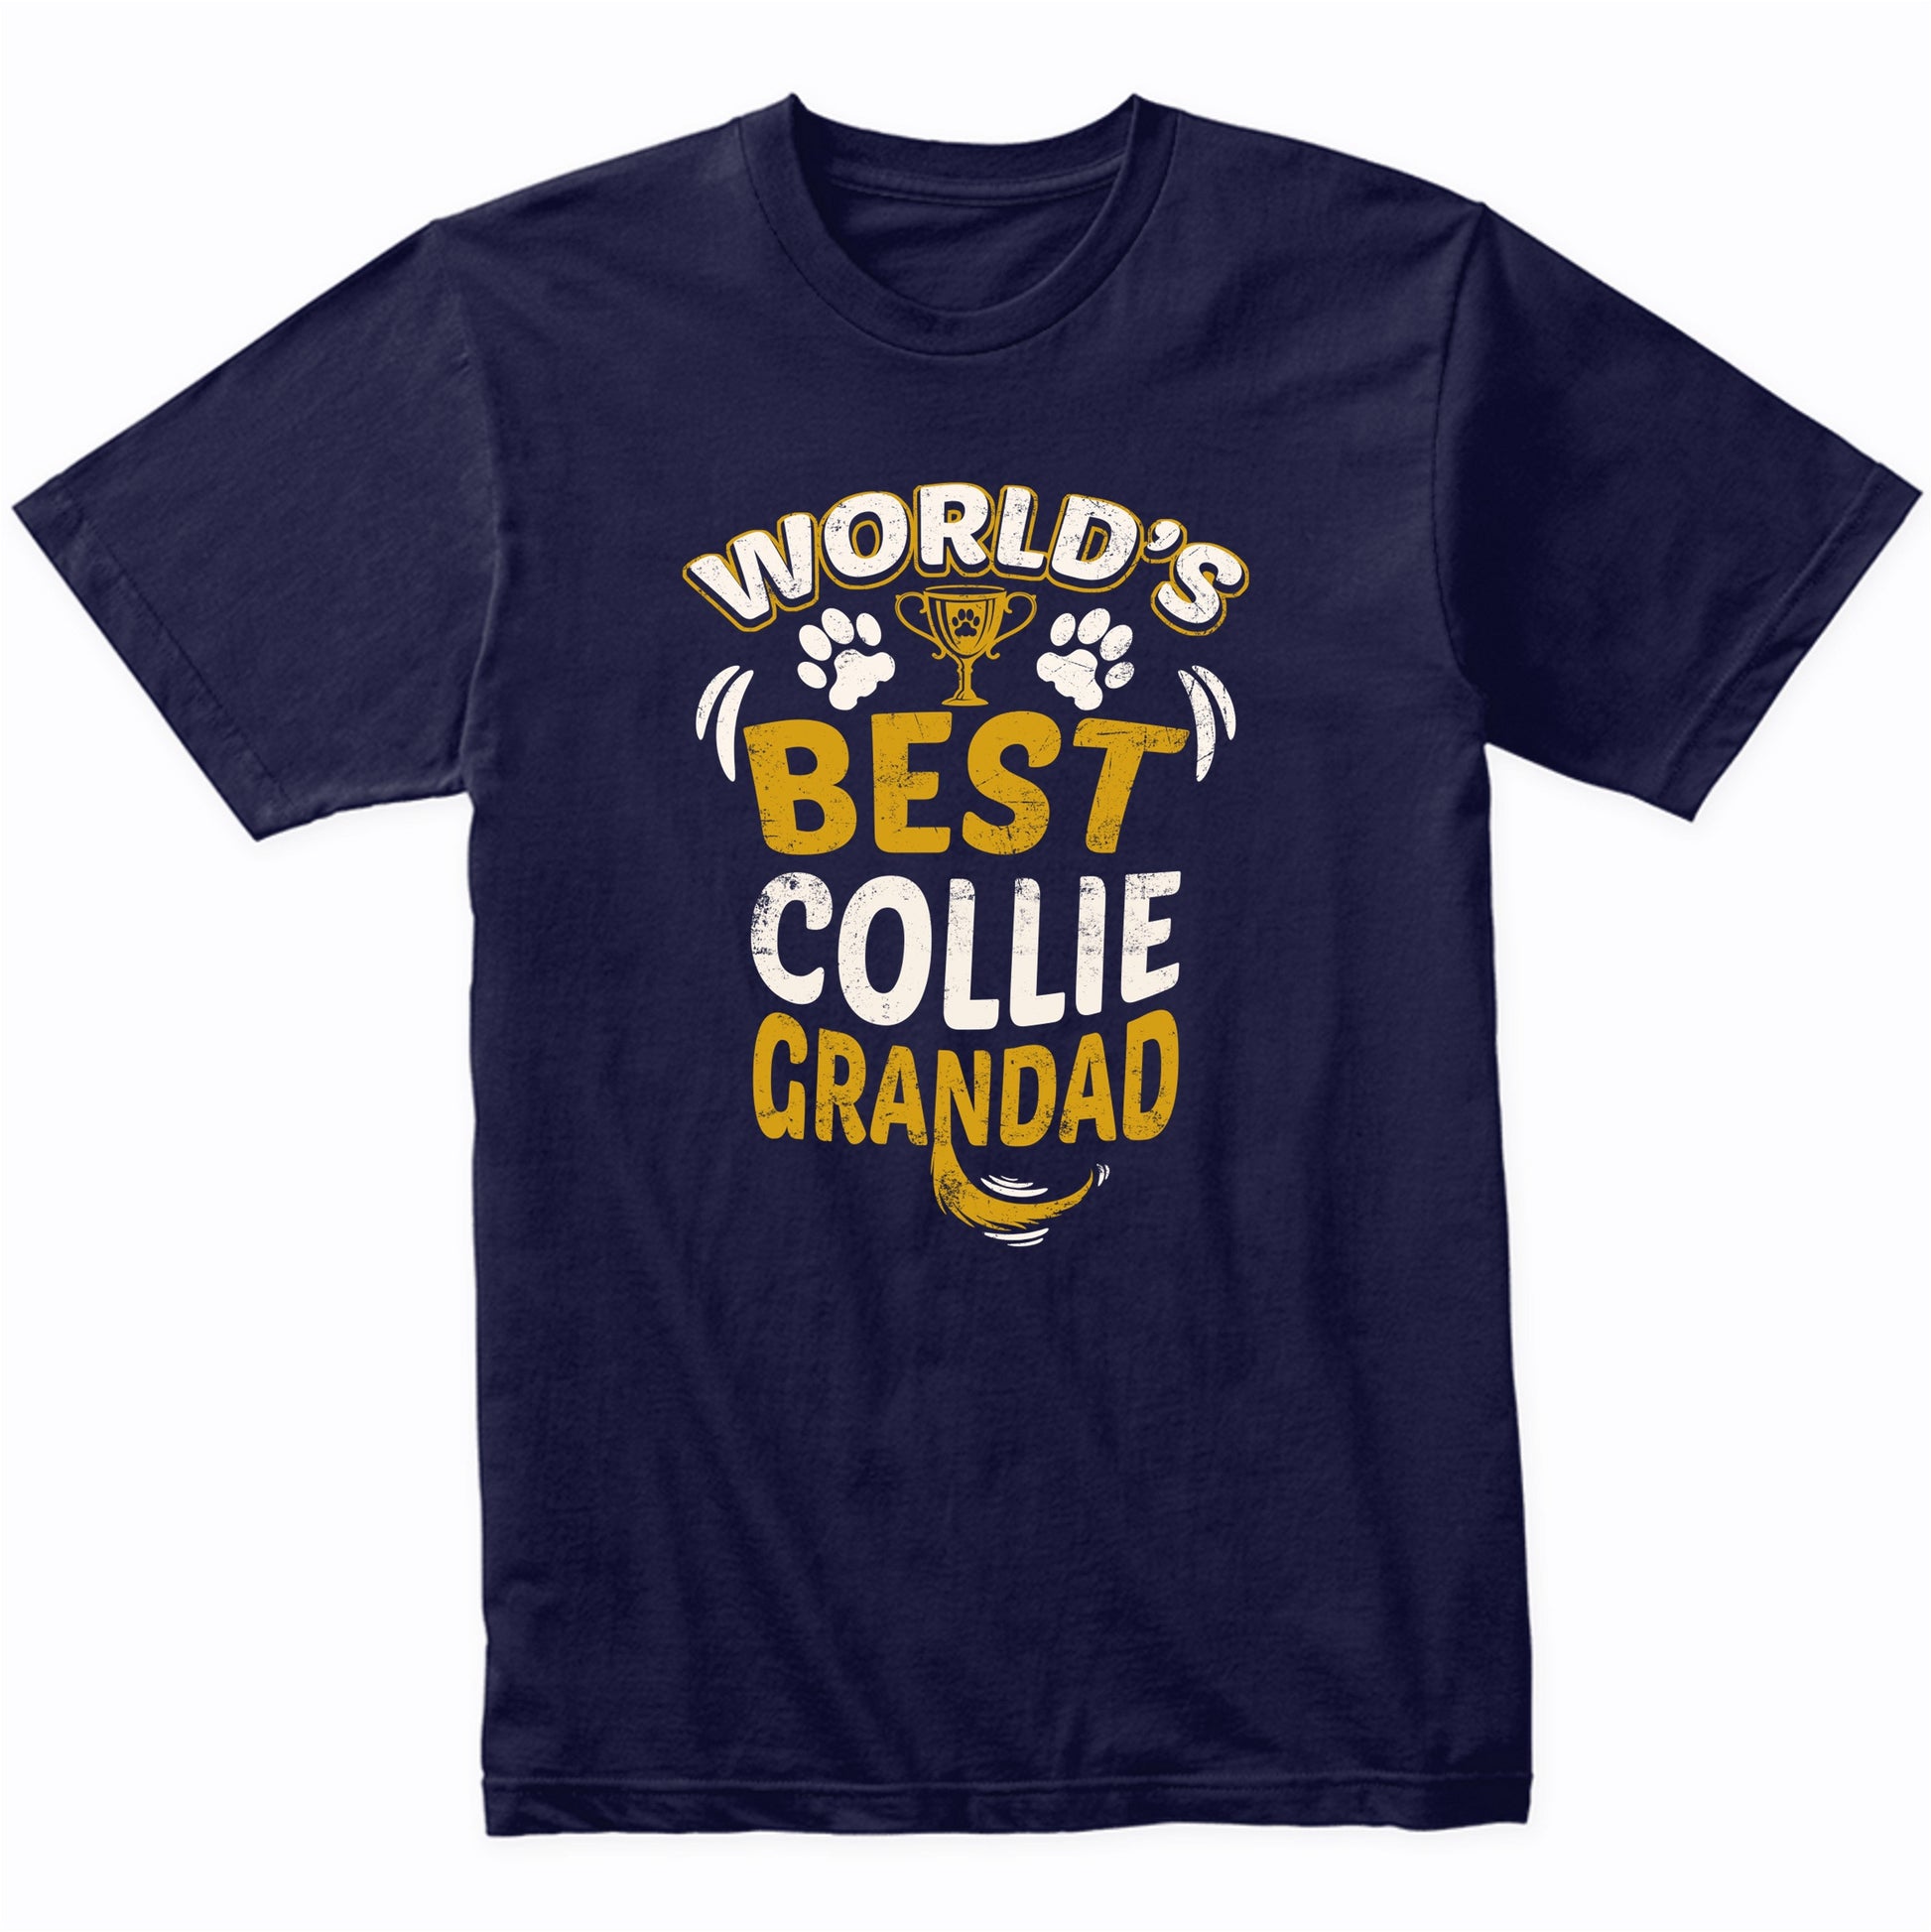 World's Best Collie Grandad Graphic T-Shirt